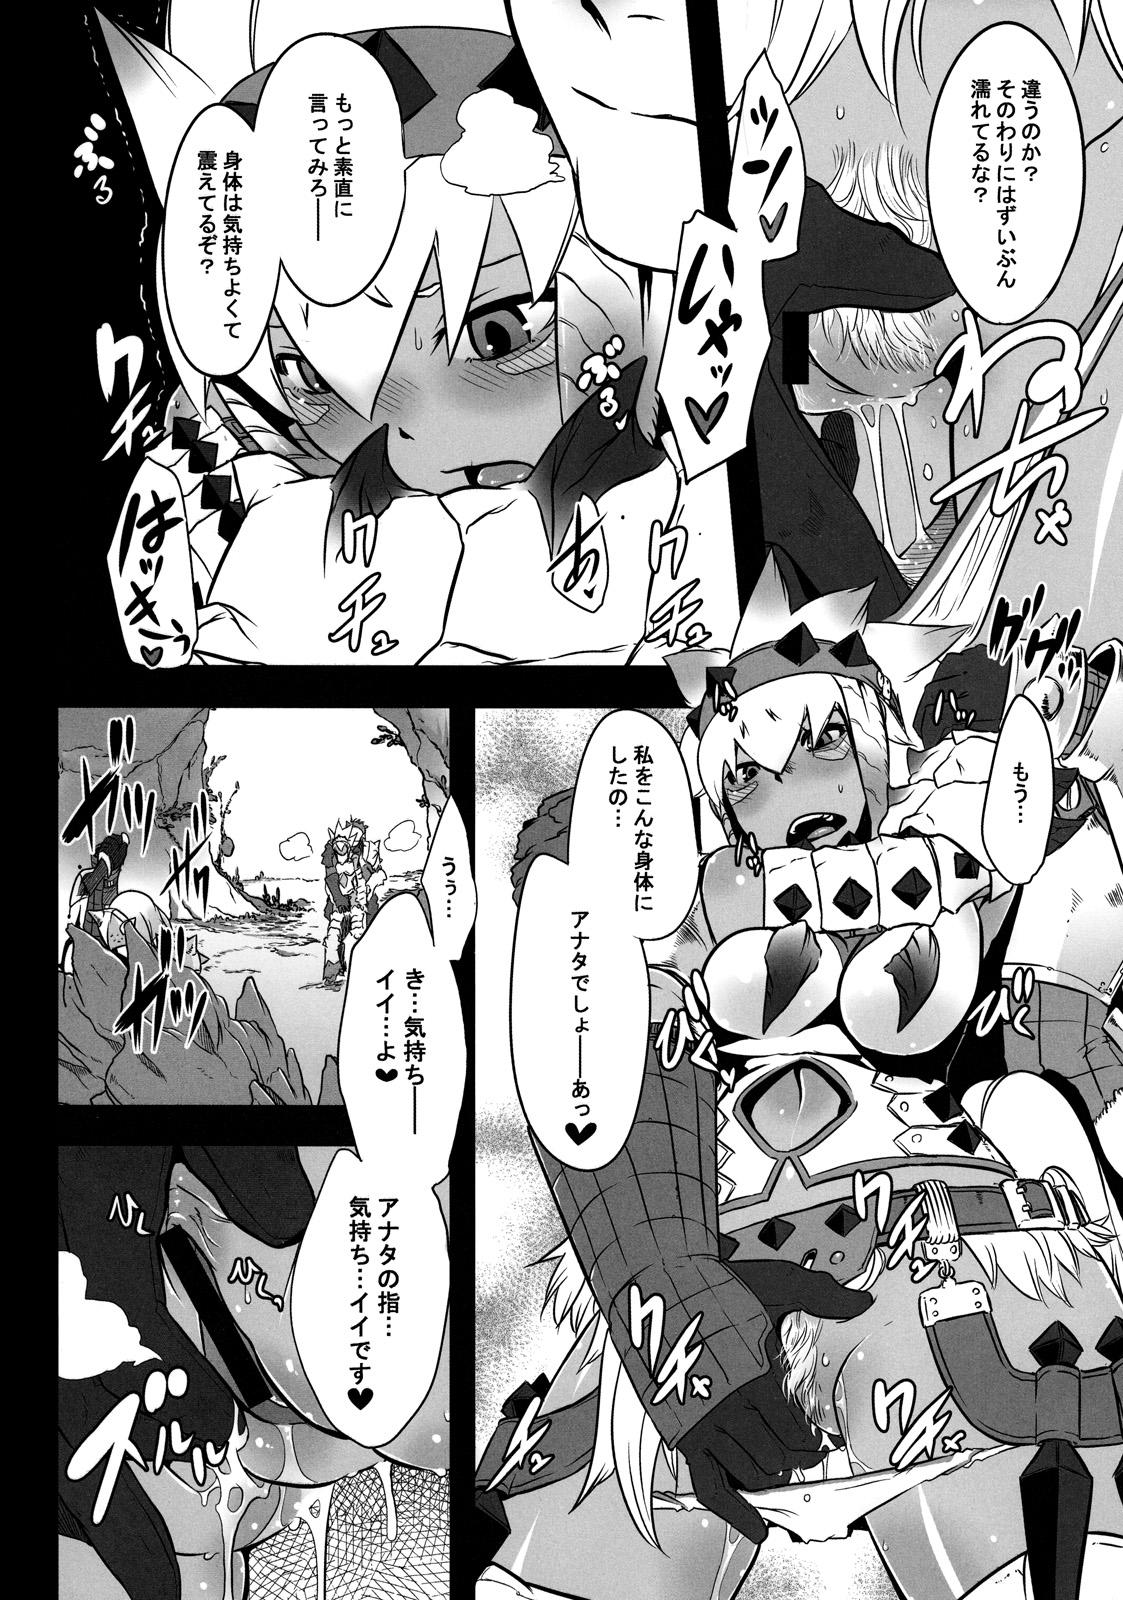 Speculum Hanshoku Nebura - Monster hunter Maid - Page 6